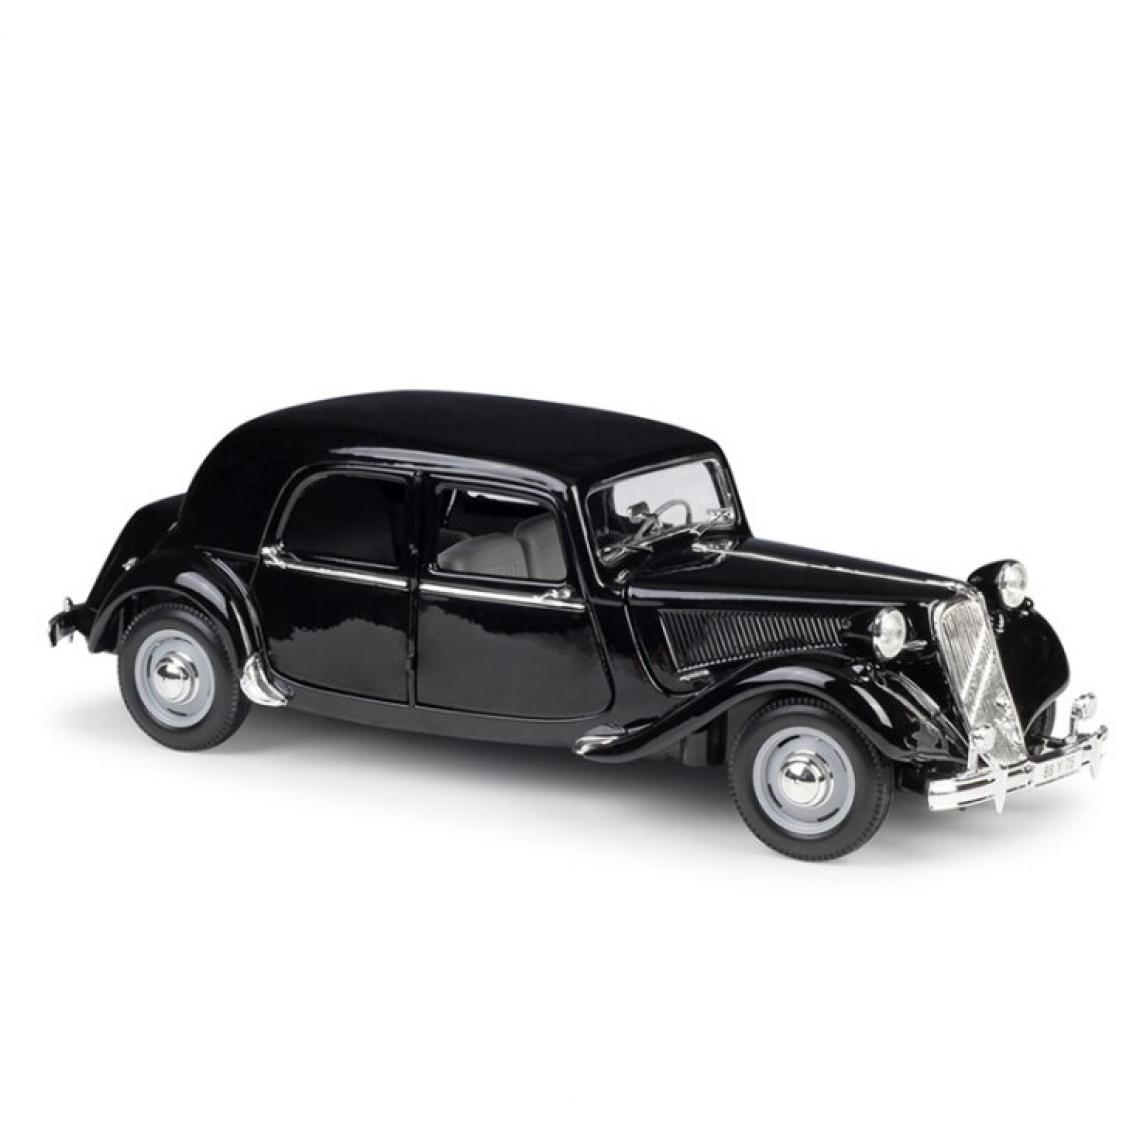 Universal - 1: 18 1952 Citroën 15CV gaz moulé alliage modèle rétro voiture classique décoration collection cadeau boîte d'origine(Le noir) - Voitures